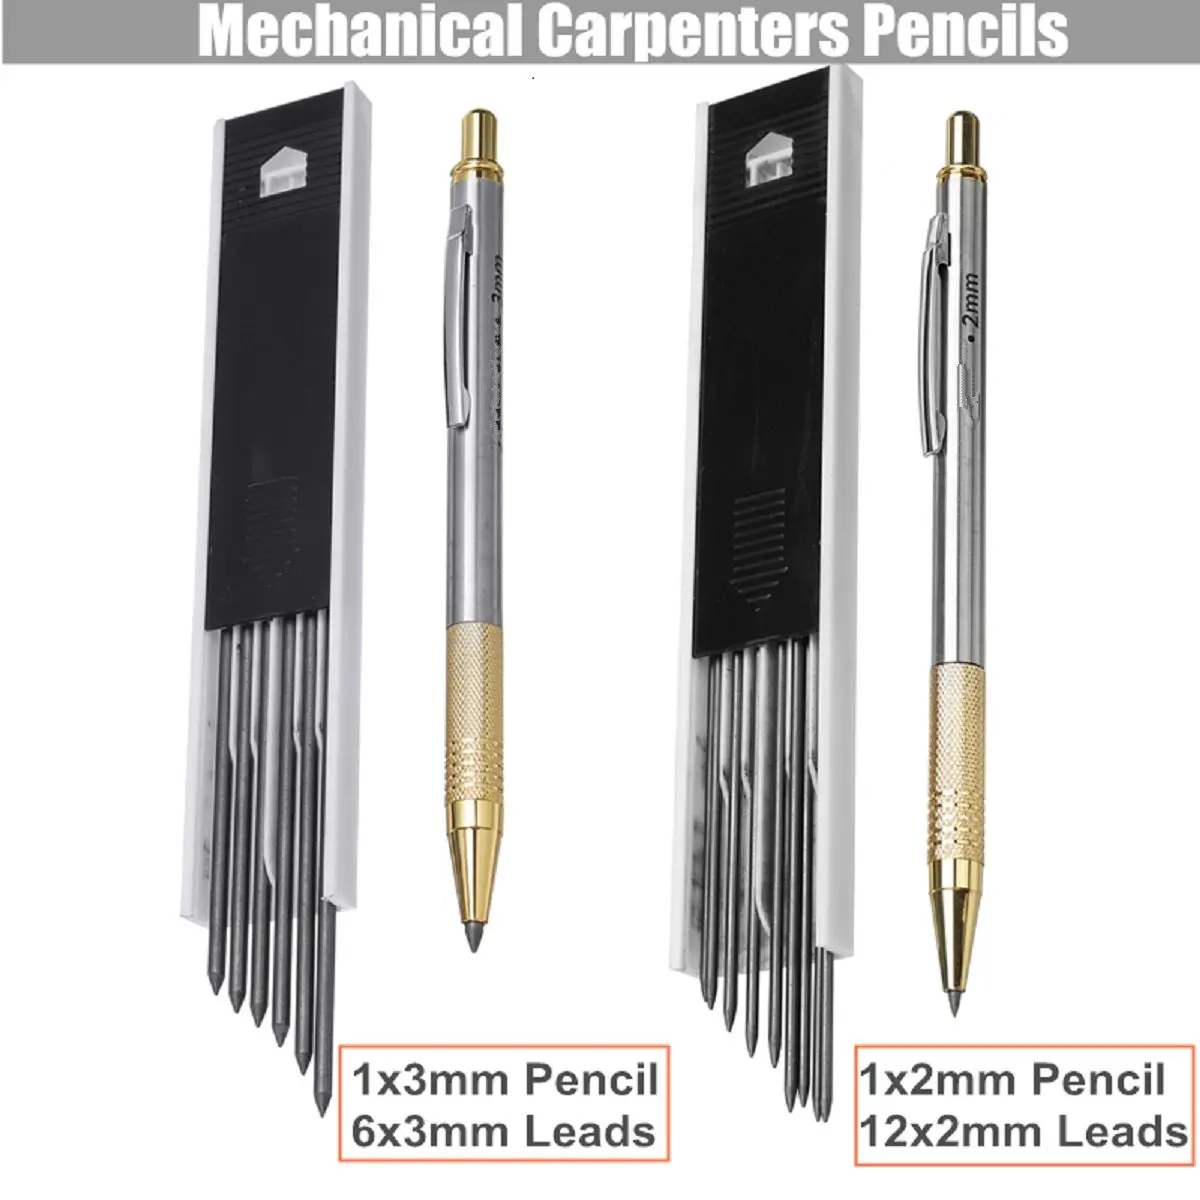 Details about   3mm Leads Mechanical Carpenters Pencils Builders Clutch Pencil 6Pcs 3mm Lead 